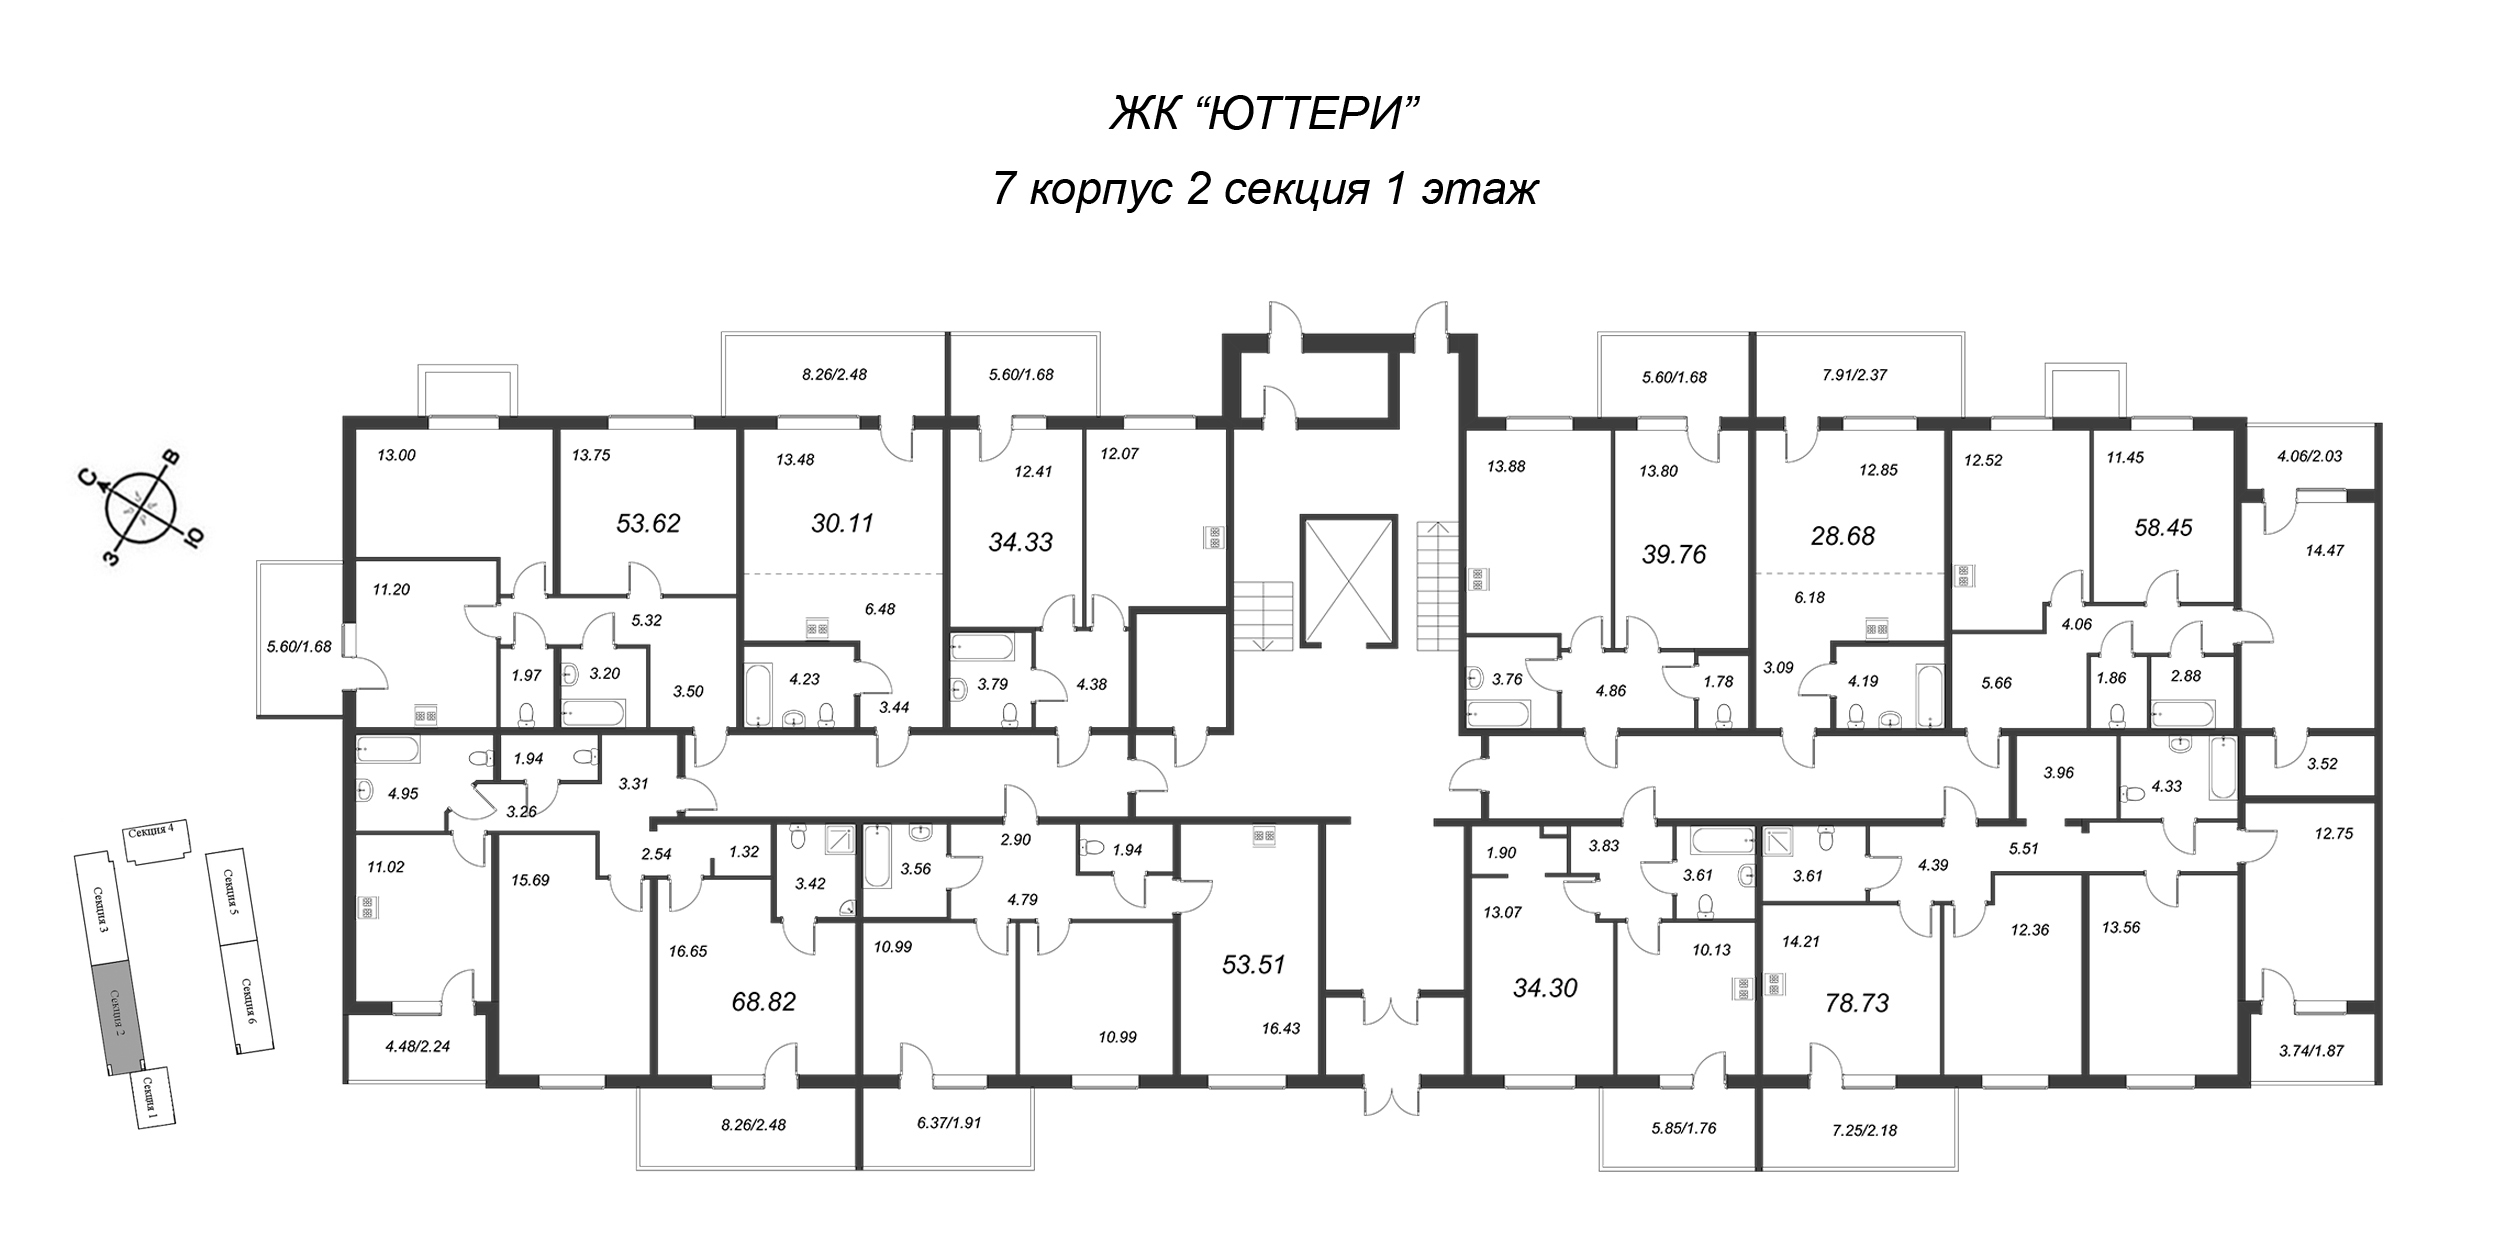 2-комнатная квартира, 64.1 м² в ЖК "Юттери" - планировка этажа